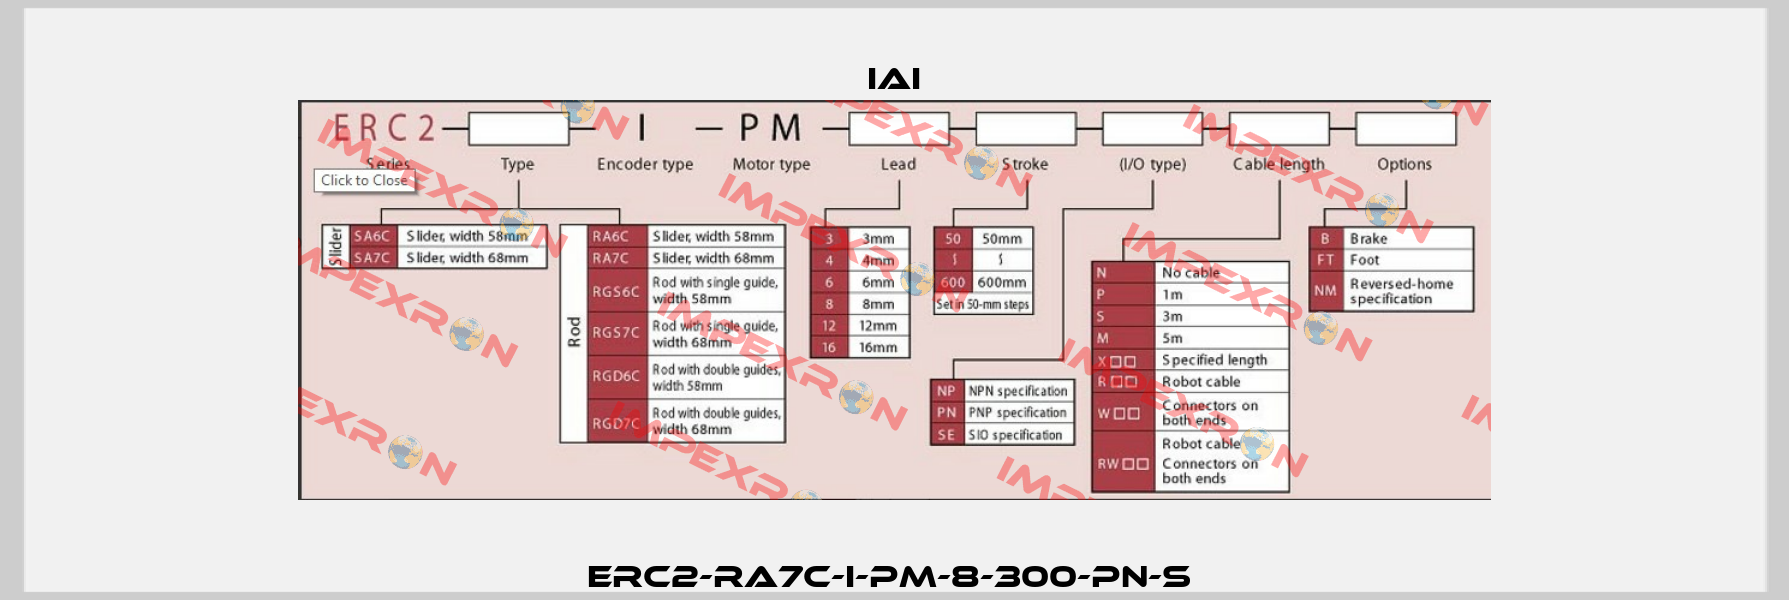 ERC2-RA7C-I-PM-8-300-PN-S  IAI